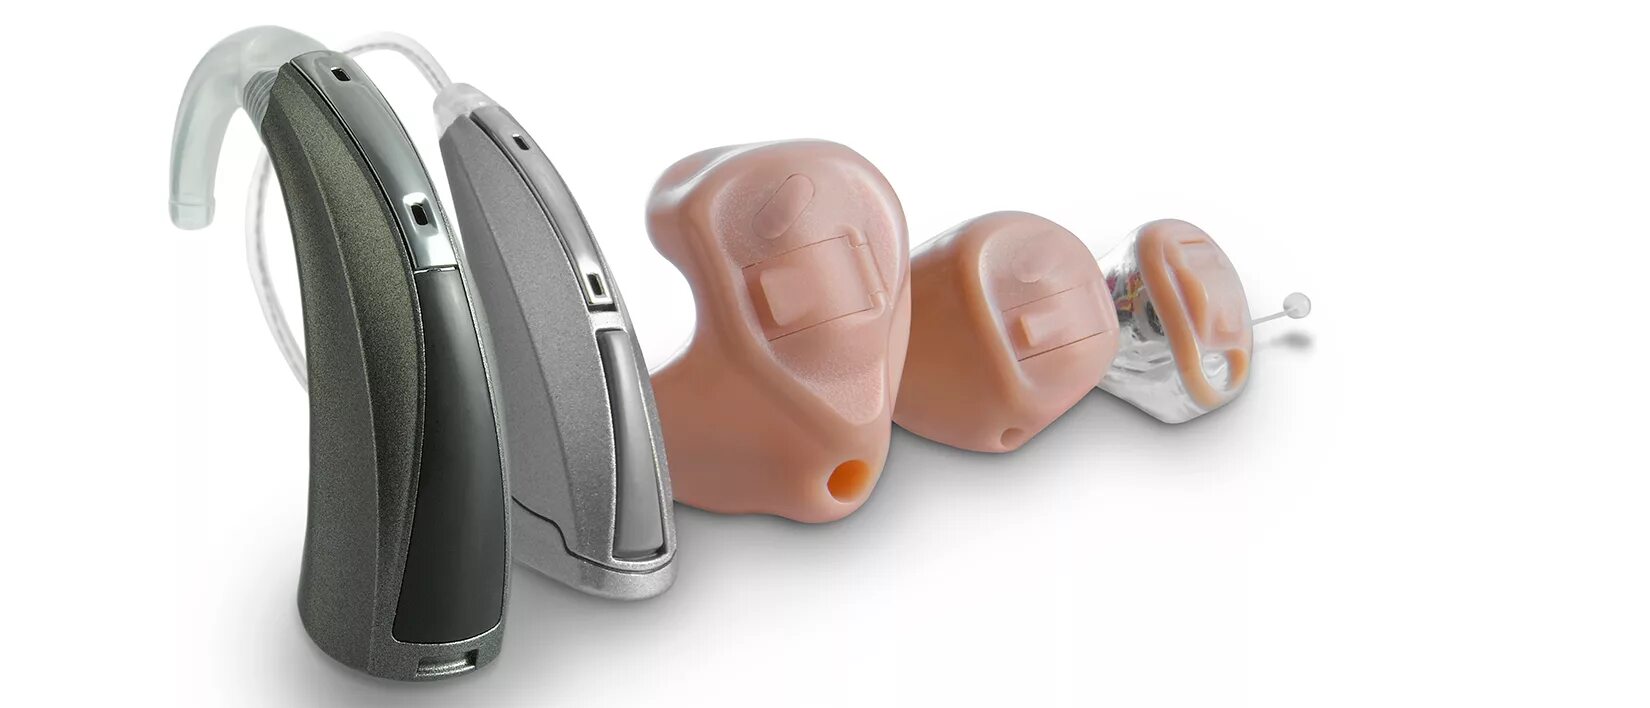 Bmgrup слуховой аппарат Live-Power LP-906. Слуховые аппараты IFLYTEK. Слуховой аппарат «Арго 6m». Слуховой аппарат Оникс 4sp. Качественные слуховые аппараты